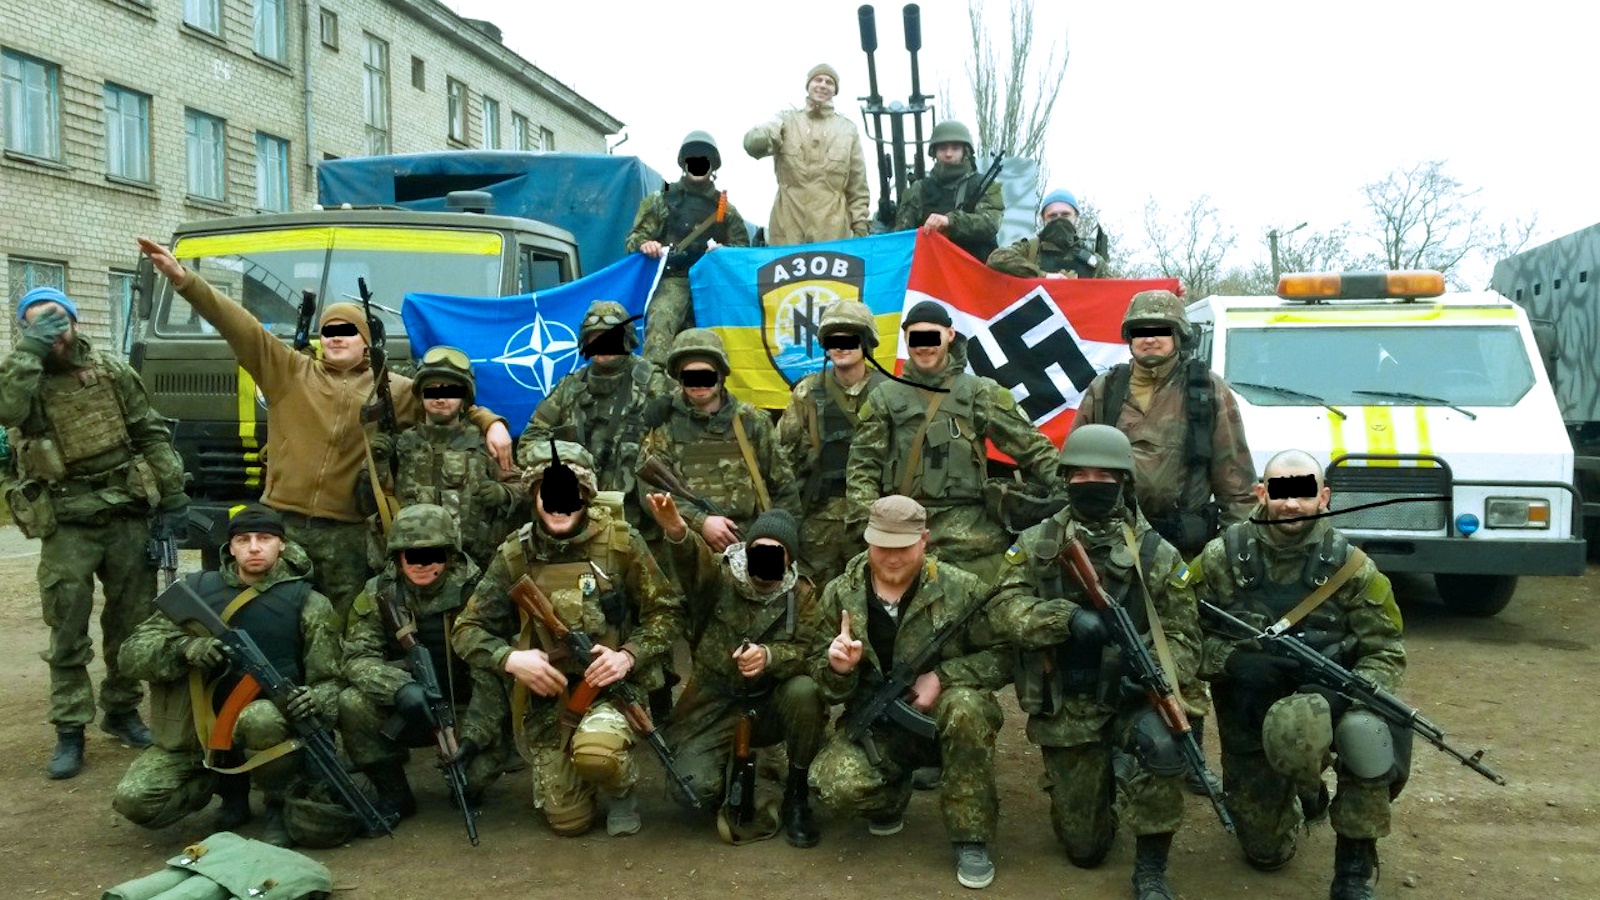 Боевики полка Азов, запрещённого на территории России